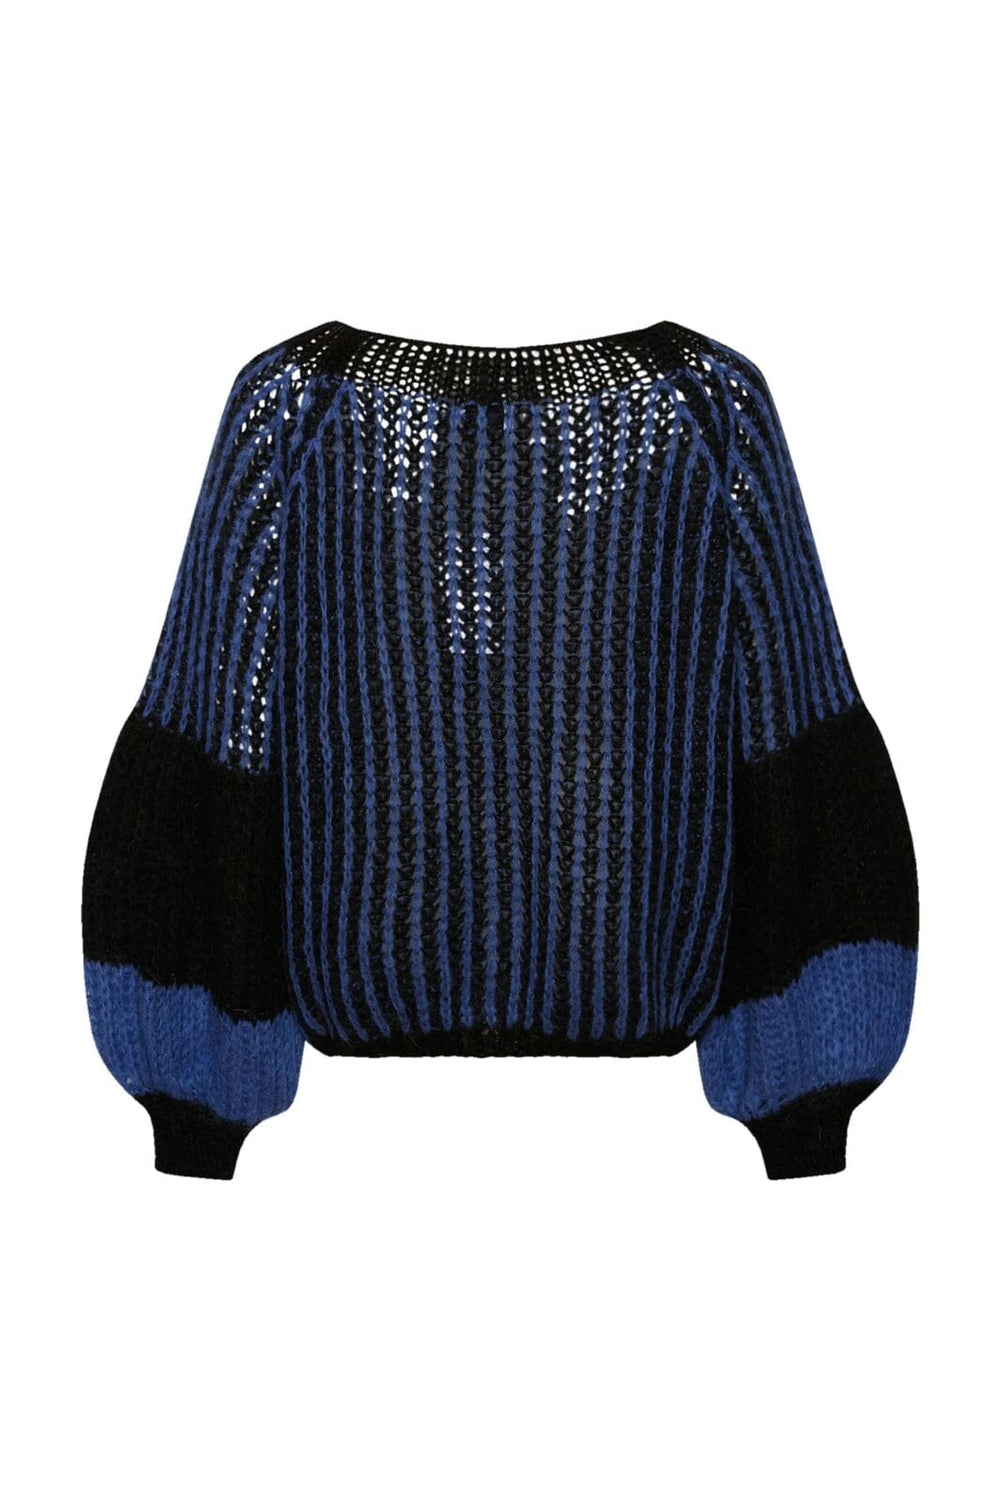 Noella - Liana Knit Sweater - Black/Electric Blue 